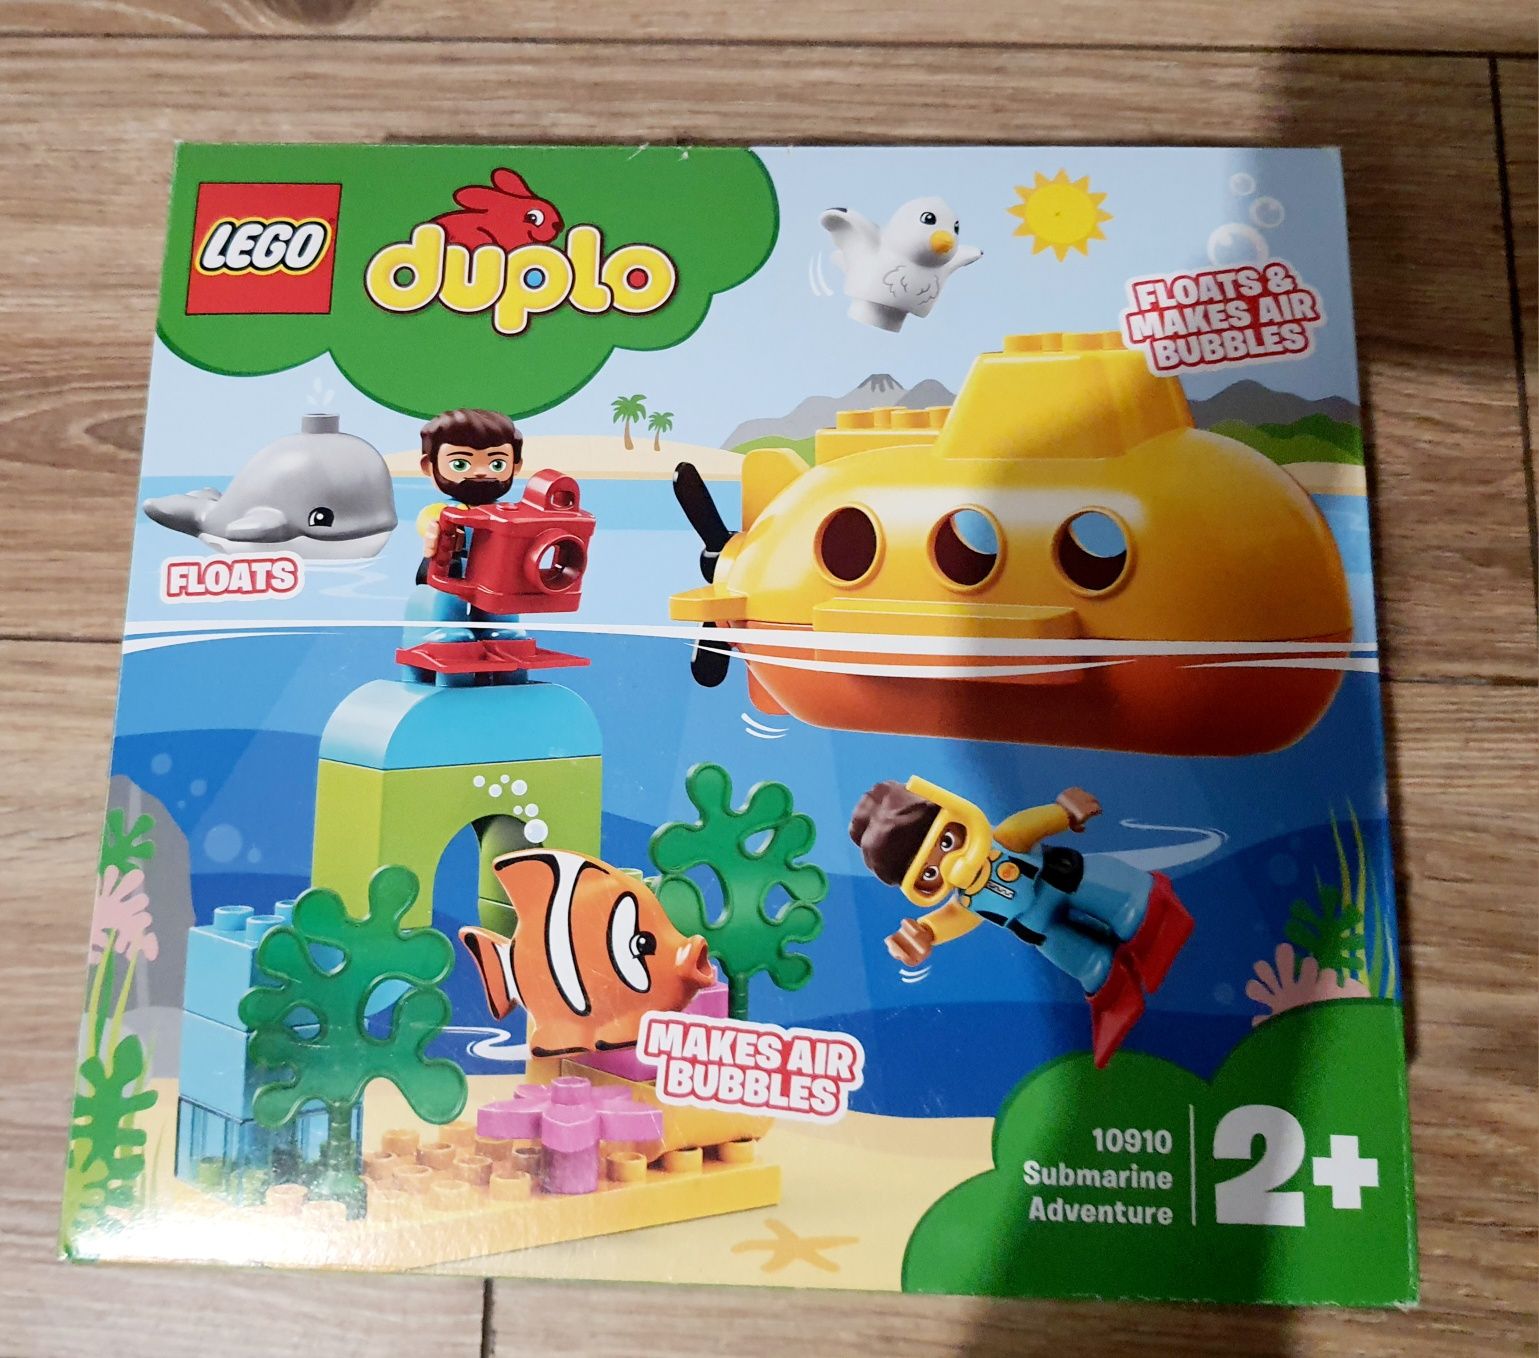 Lego Duplo Przygoda w Łodzi podwodnej